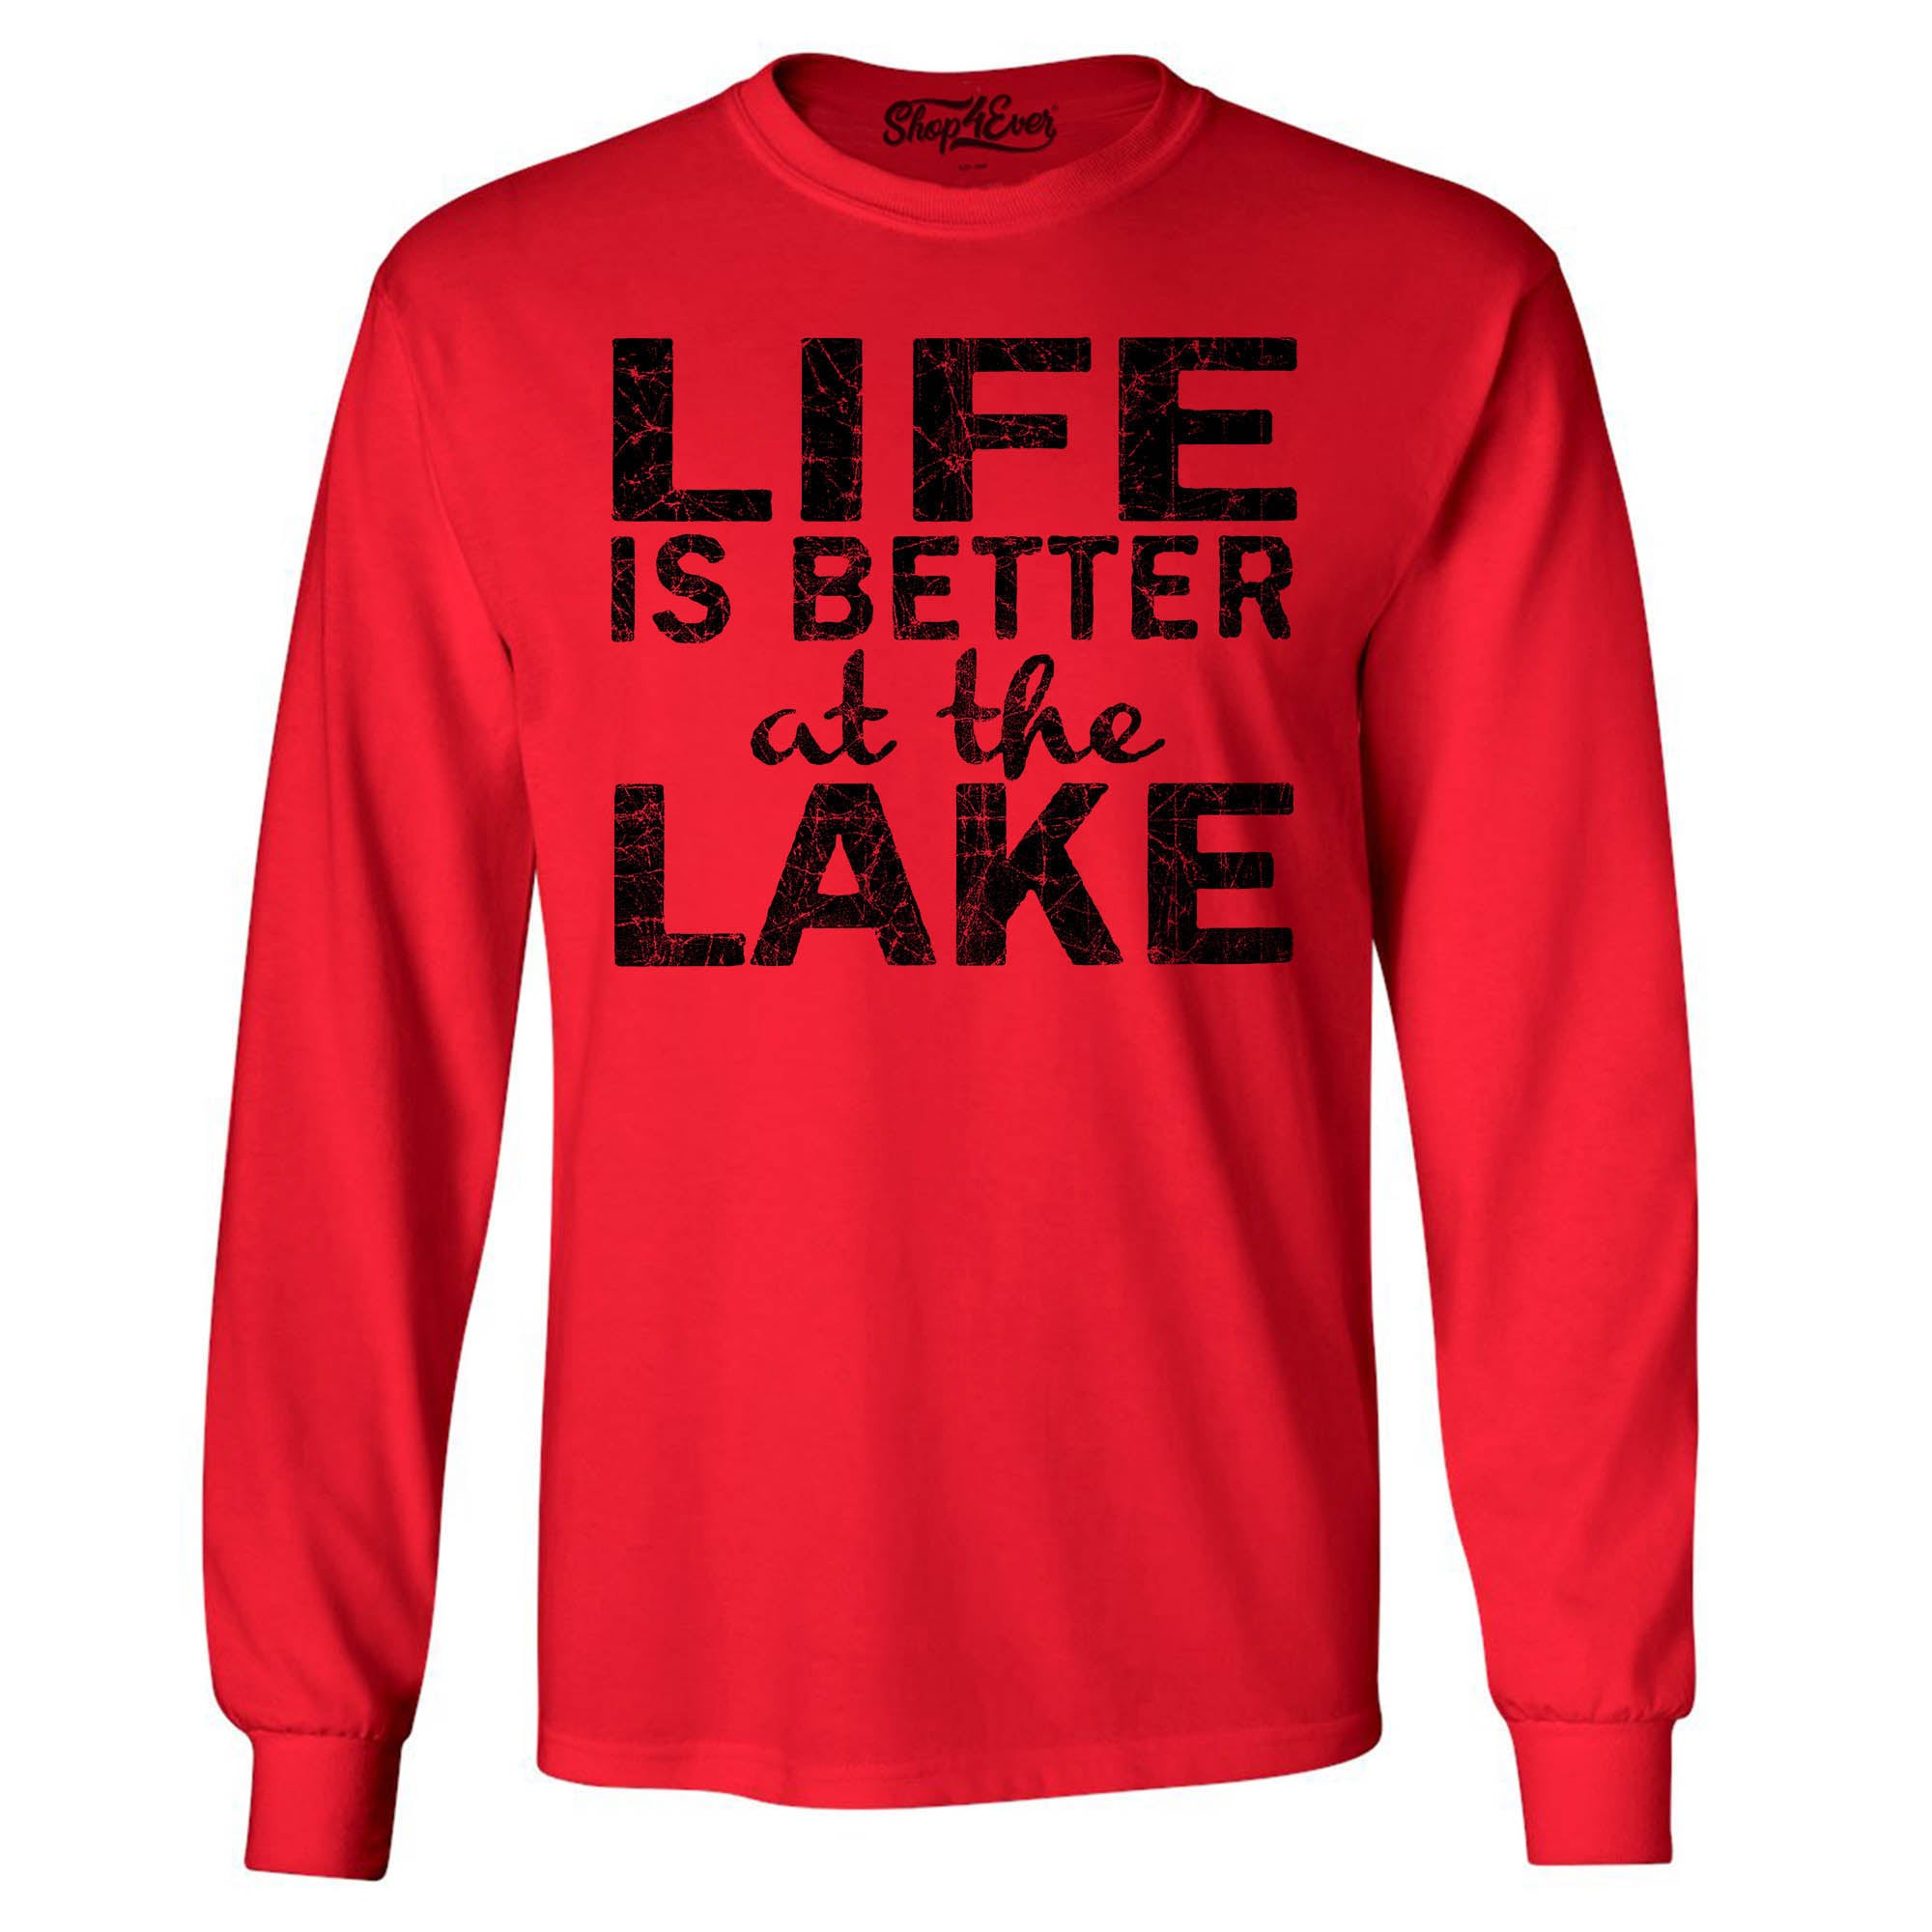 Life is Better at The Lake Black Long Sleeve Shirt Sayings Shirts